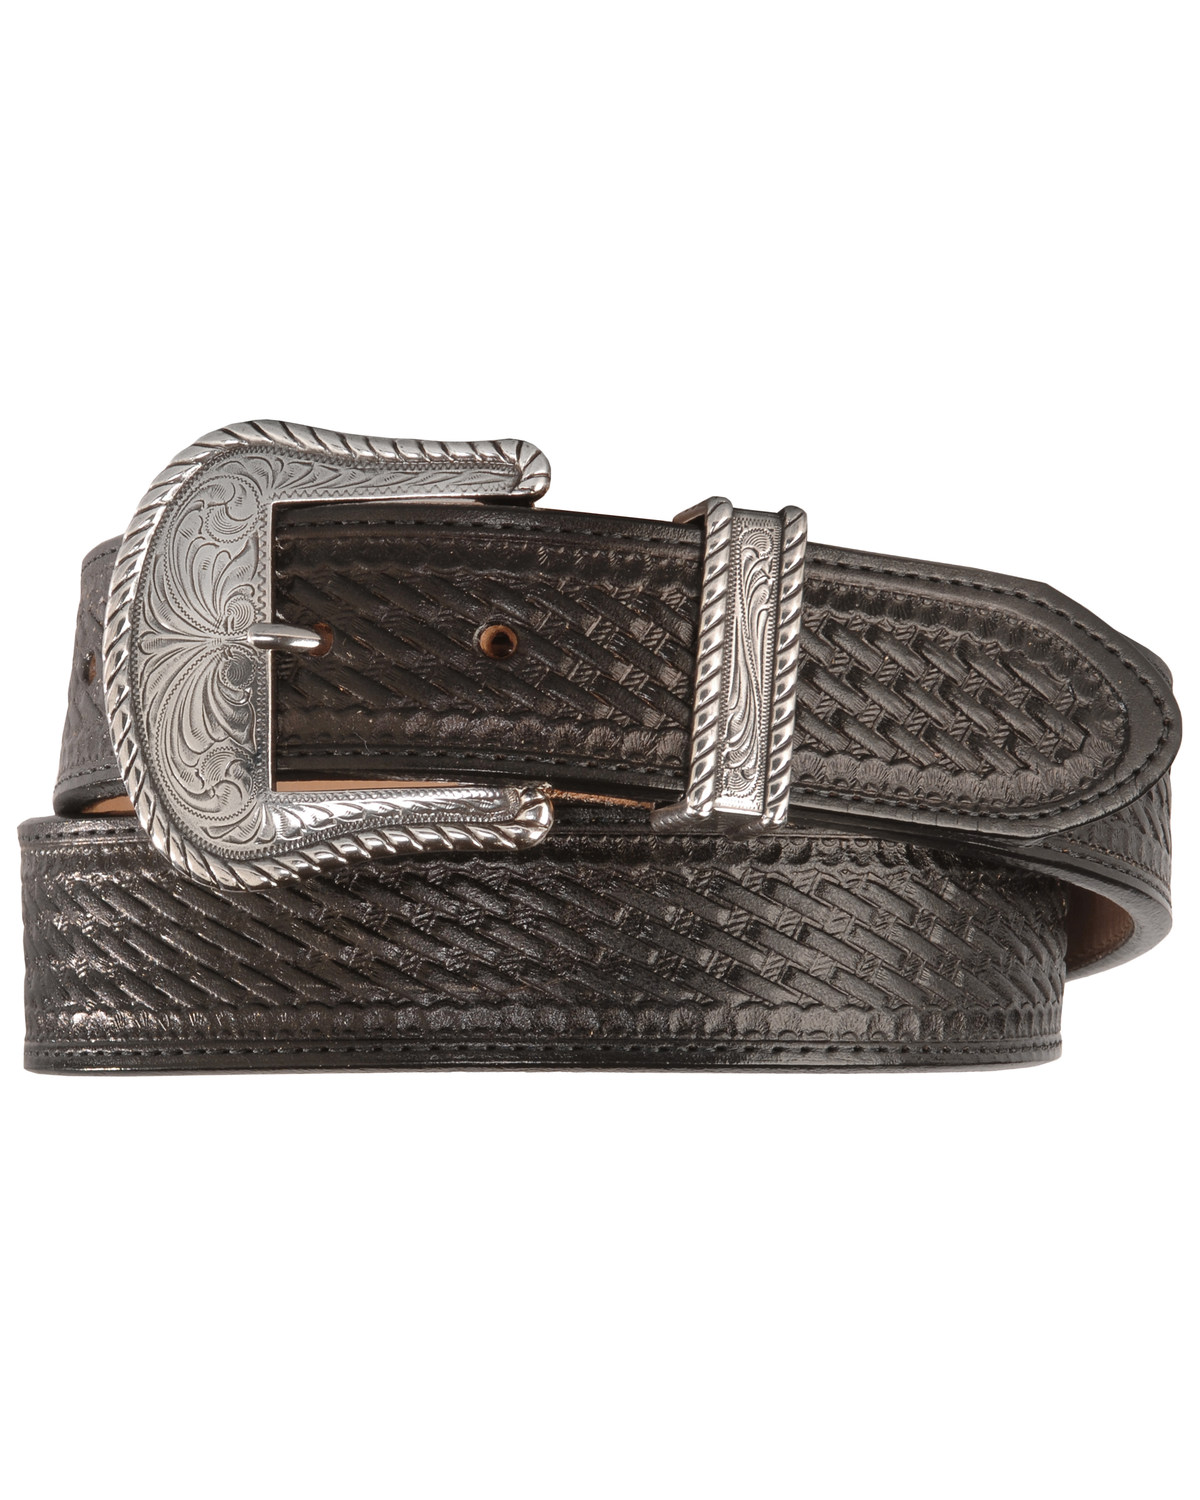 Justin Men's Bronco Basketweave Leather Belt